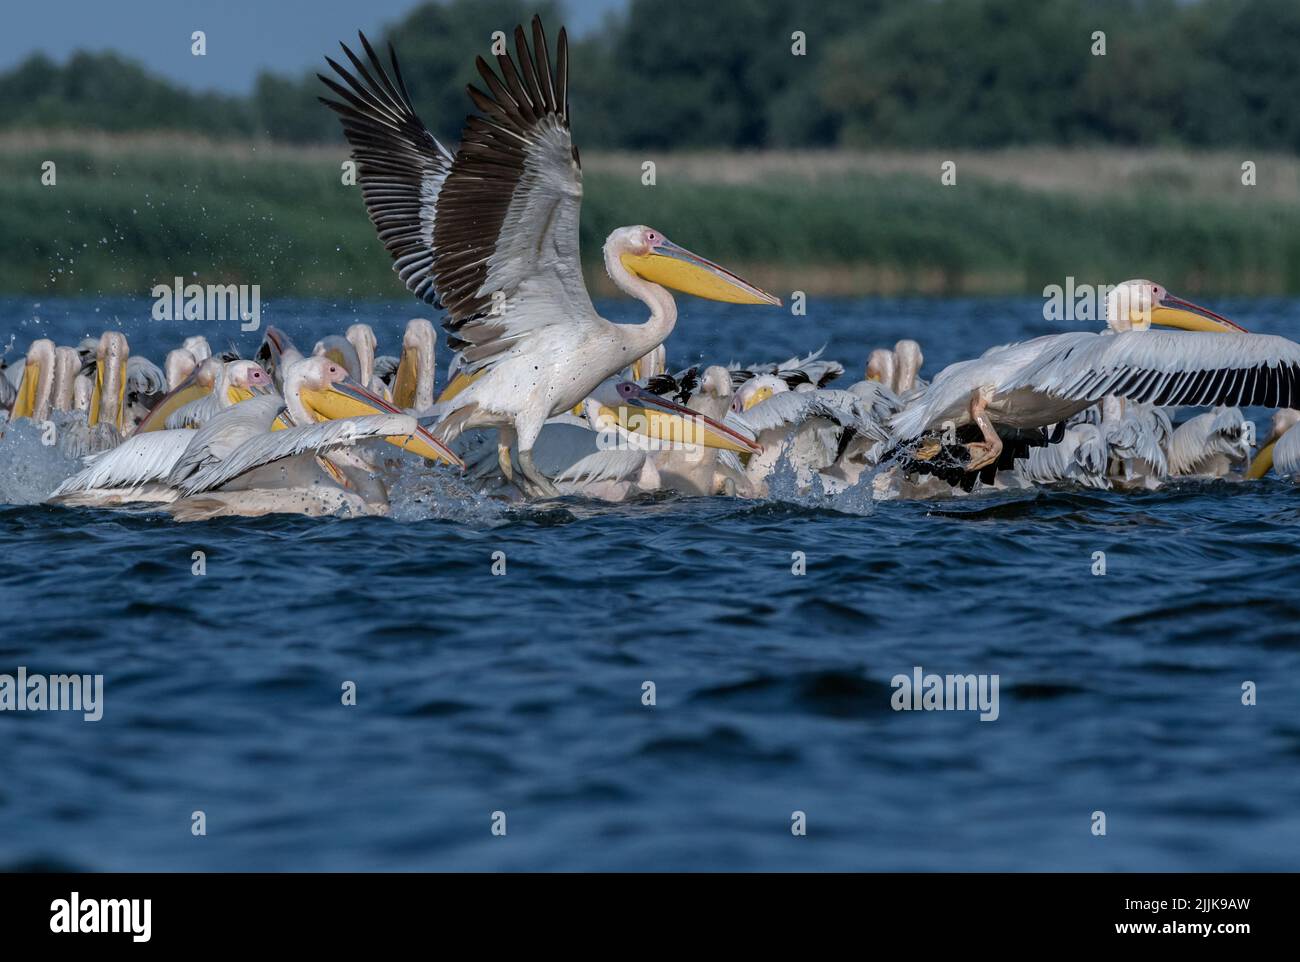 Pelicans (Pelecanus onocrotalus). Romania Stock Photo